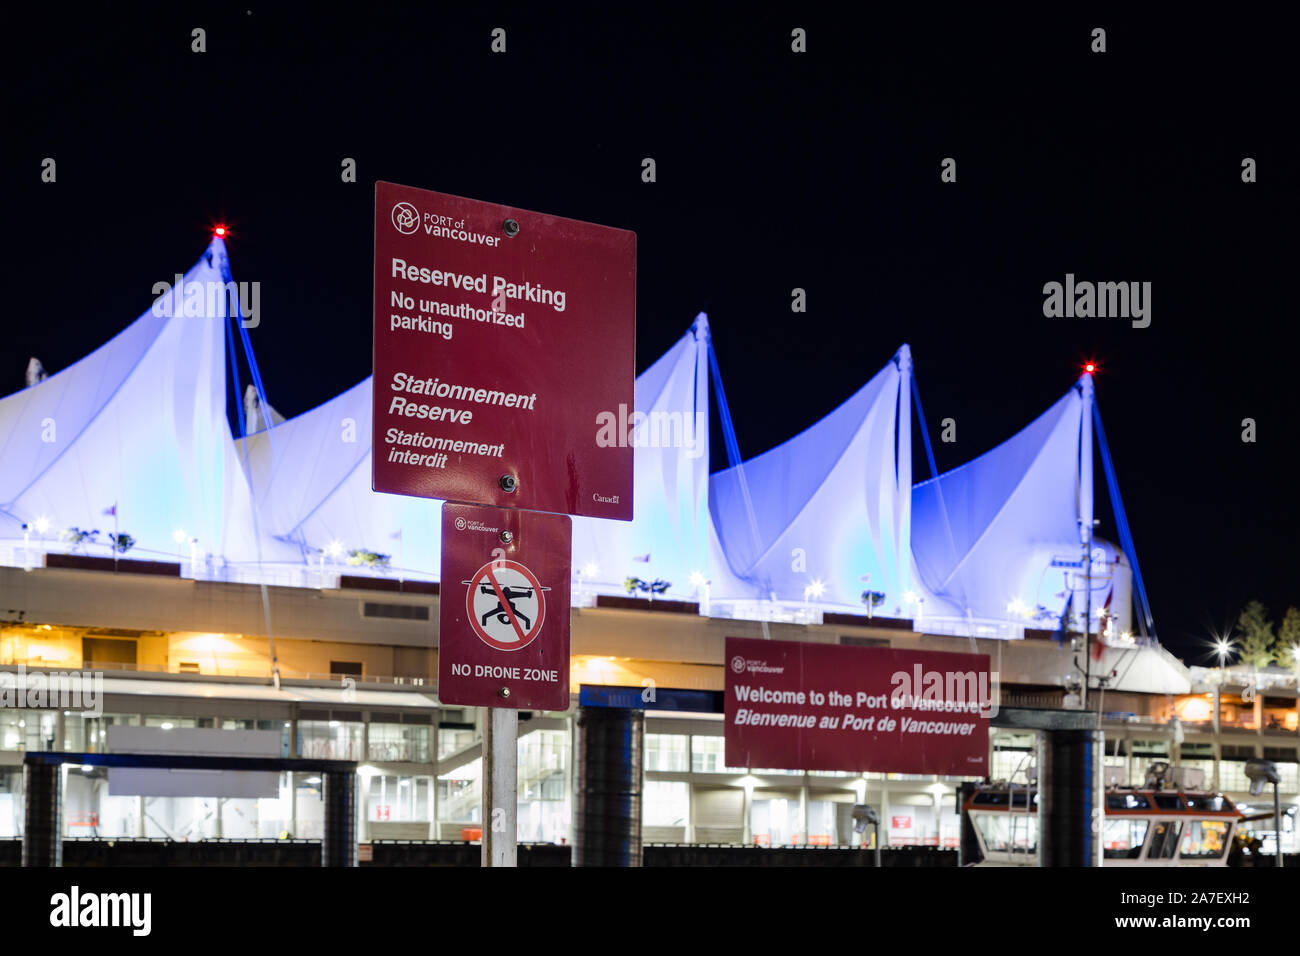 VANCOUVER, BC, KANADA - 06. SEPTEMBER 2019: Schild mit der Werbung für die Beschränkung von Drohnenflügen in der Gegend vor dem Five Sails Pan Pacific Hotel in Stockfoto